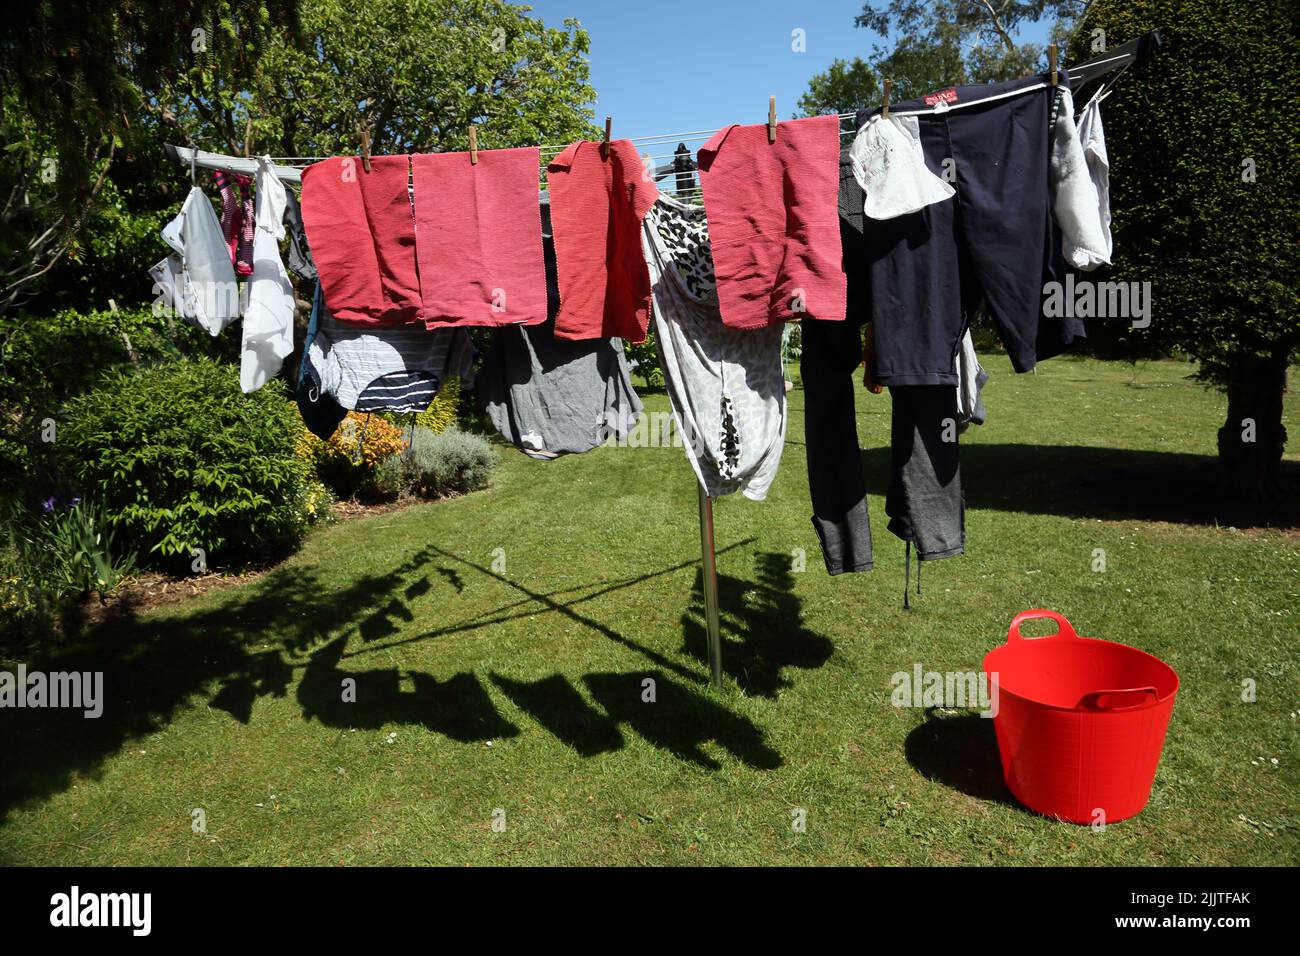 Séchage de vêtements sur la ligne Rotary lors d'une Sunny Day en mai Surrey Angleterre Banque D'Images